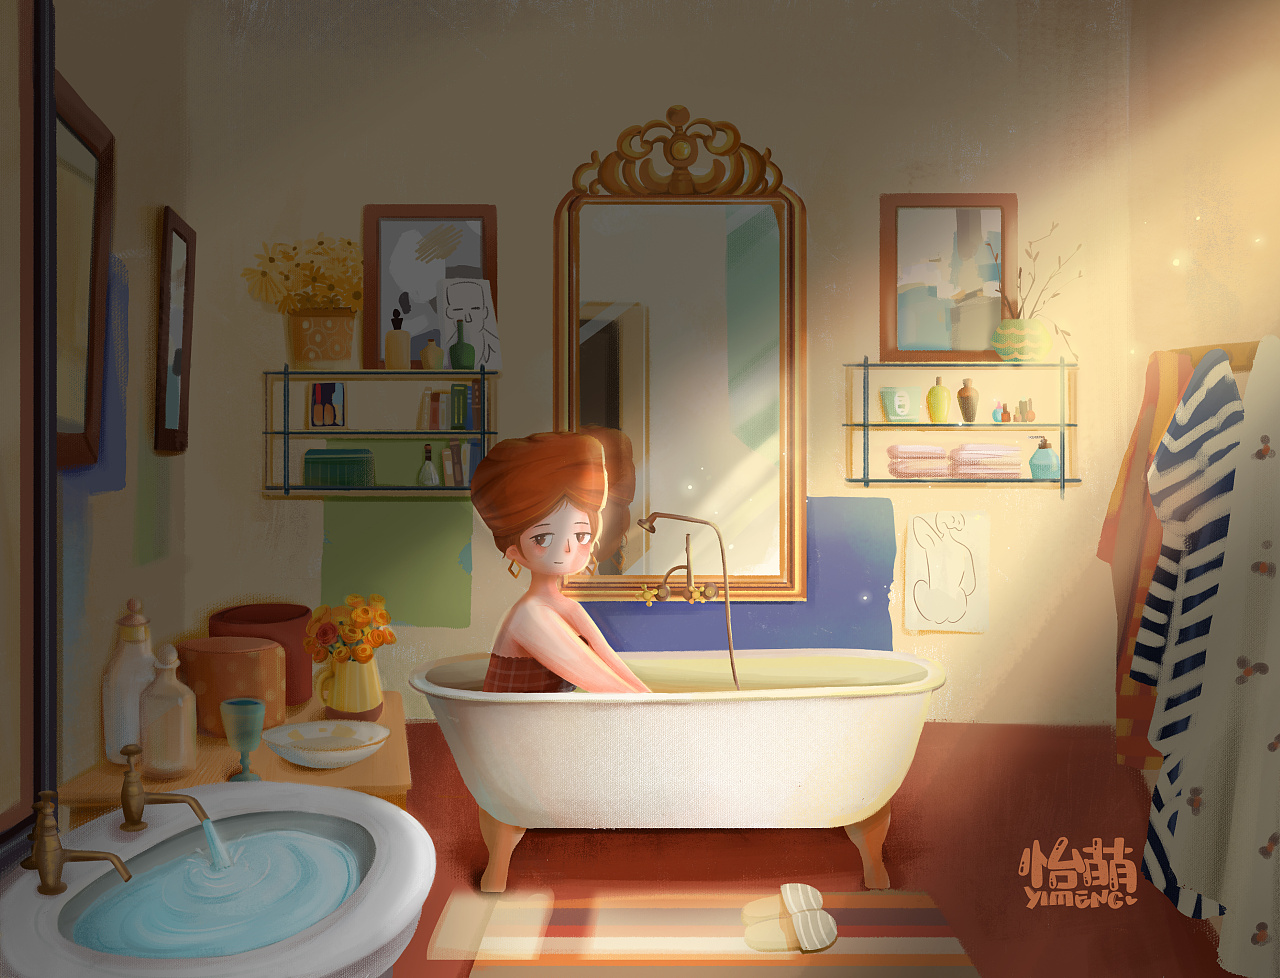 少女浴室柜二十天-图库-五毛网